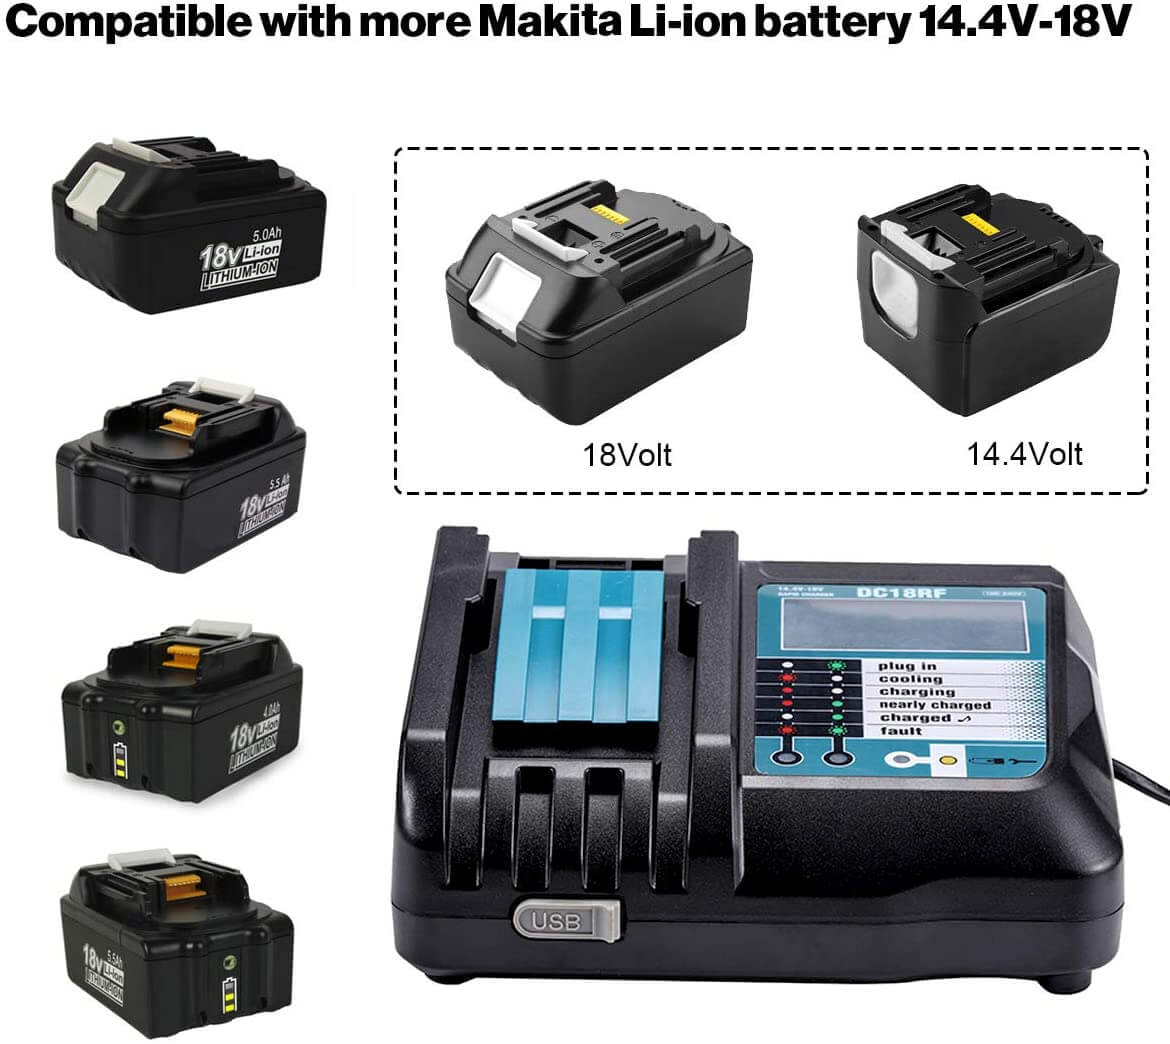 BL1850 + DC18RF 3.5A Chargeur de remplacement LI-ion pour Makita 14.4V-18V Chargers de batterie